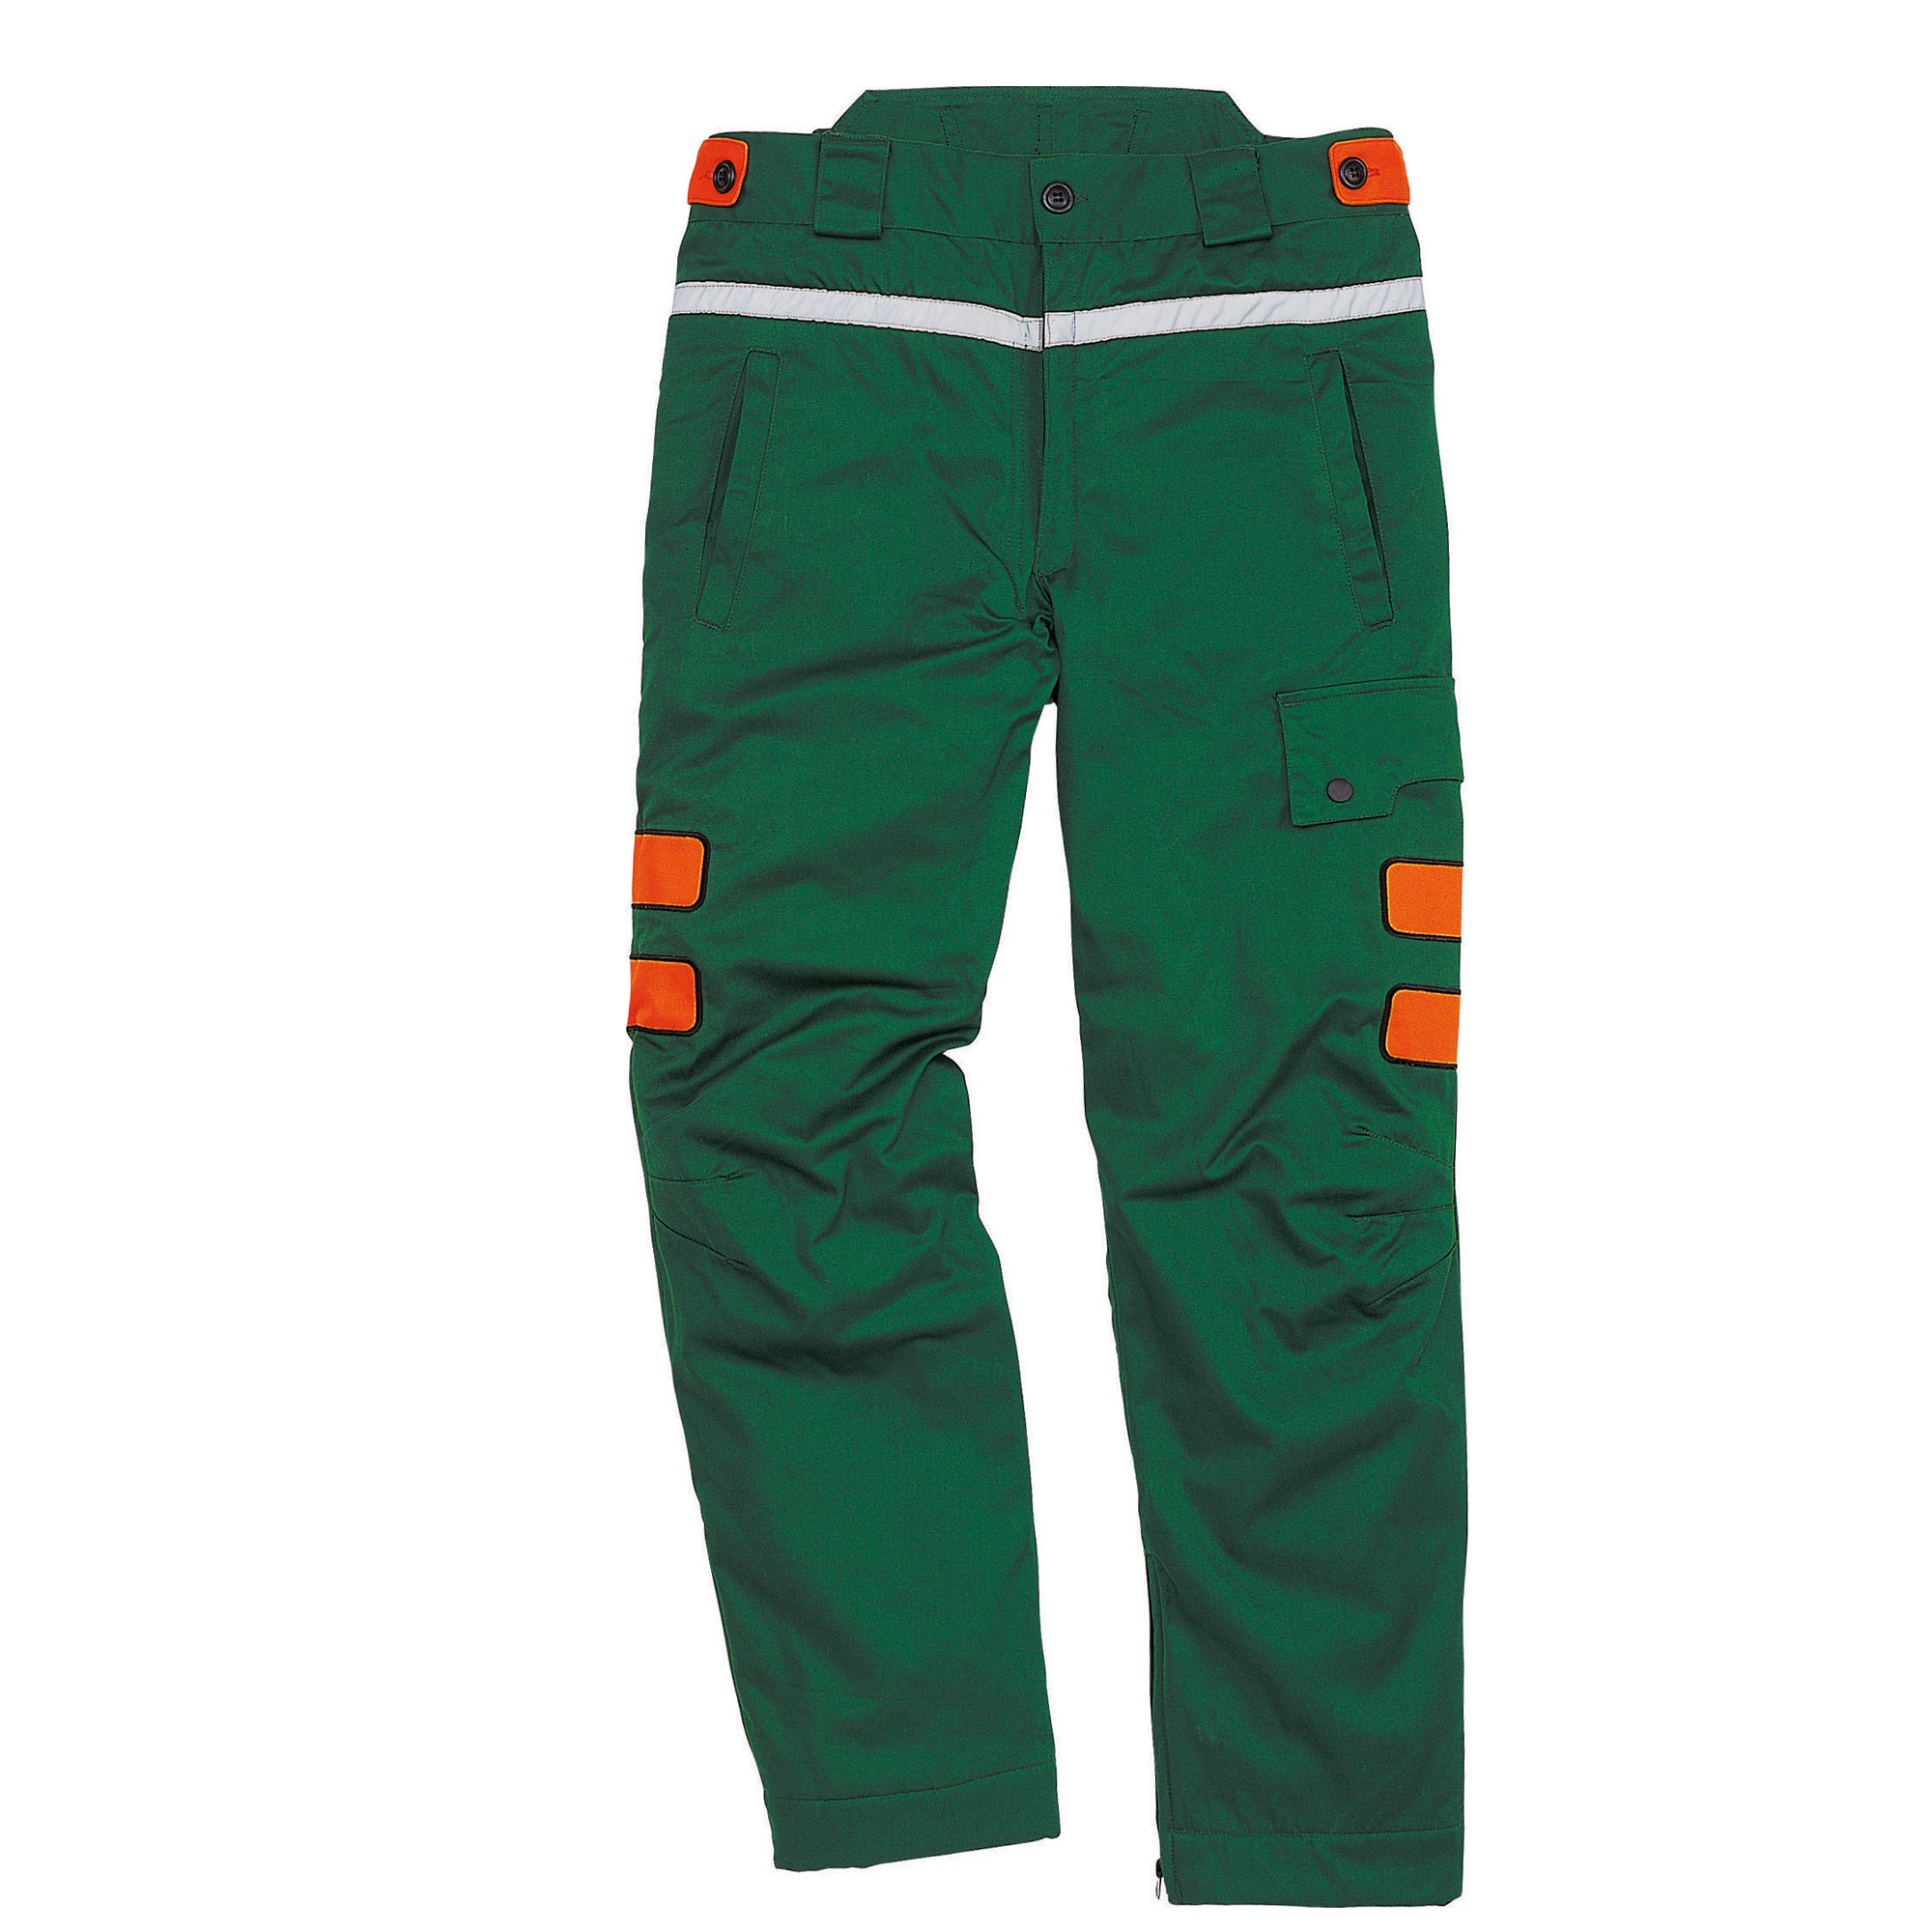 Pantalone Meleze3 - per boscaiolo - taglia XL - verde/arancio - Deltaplus